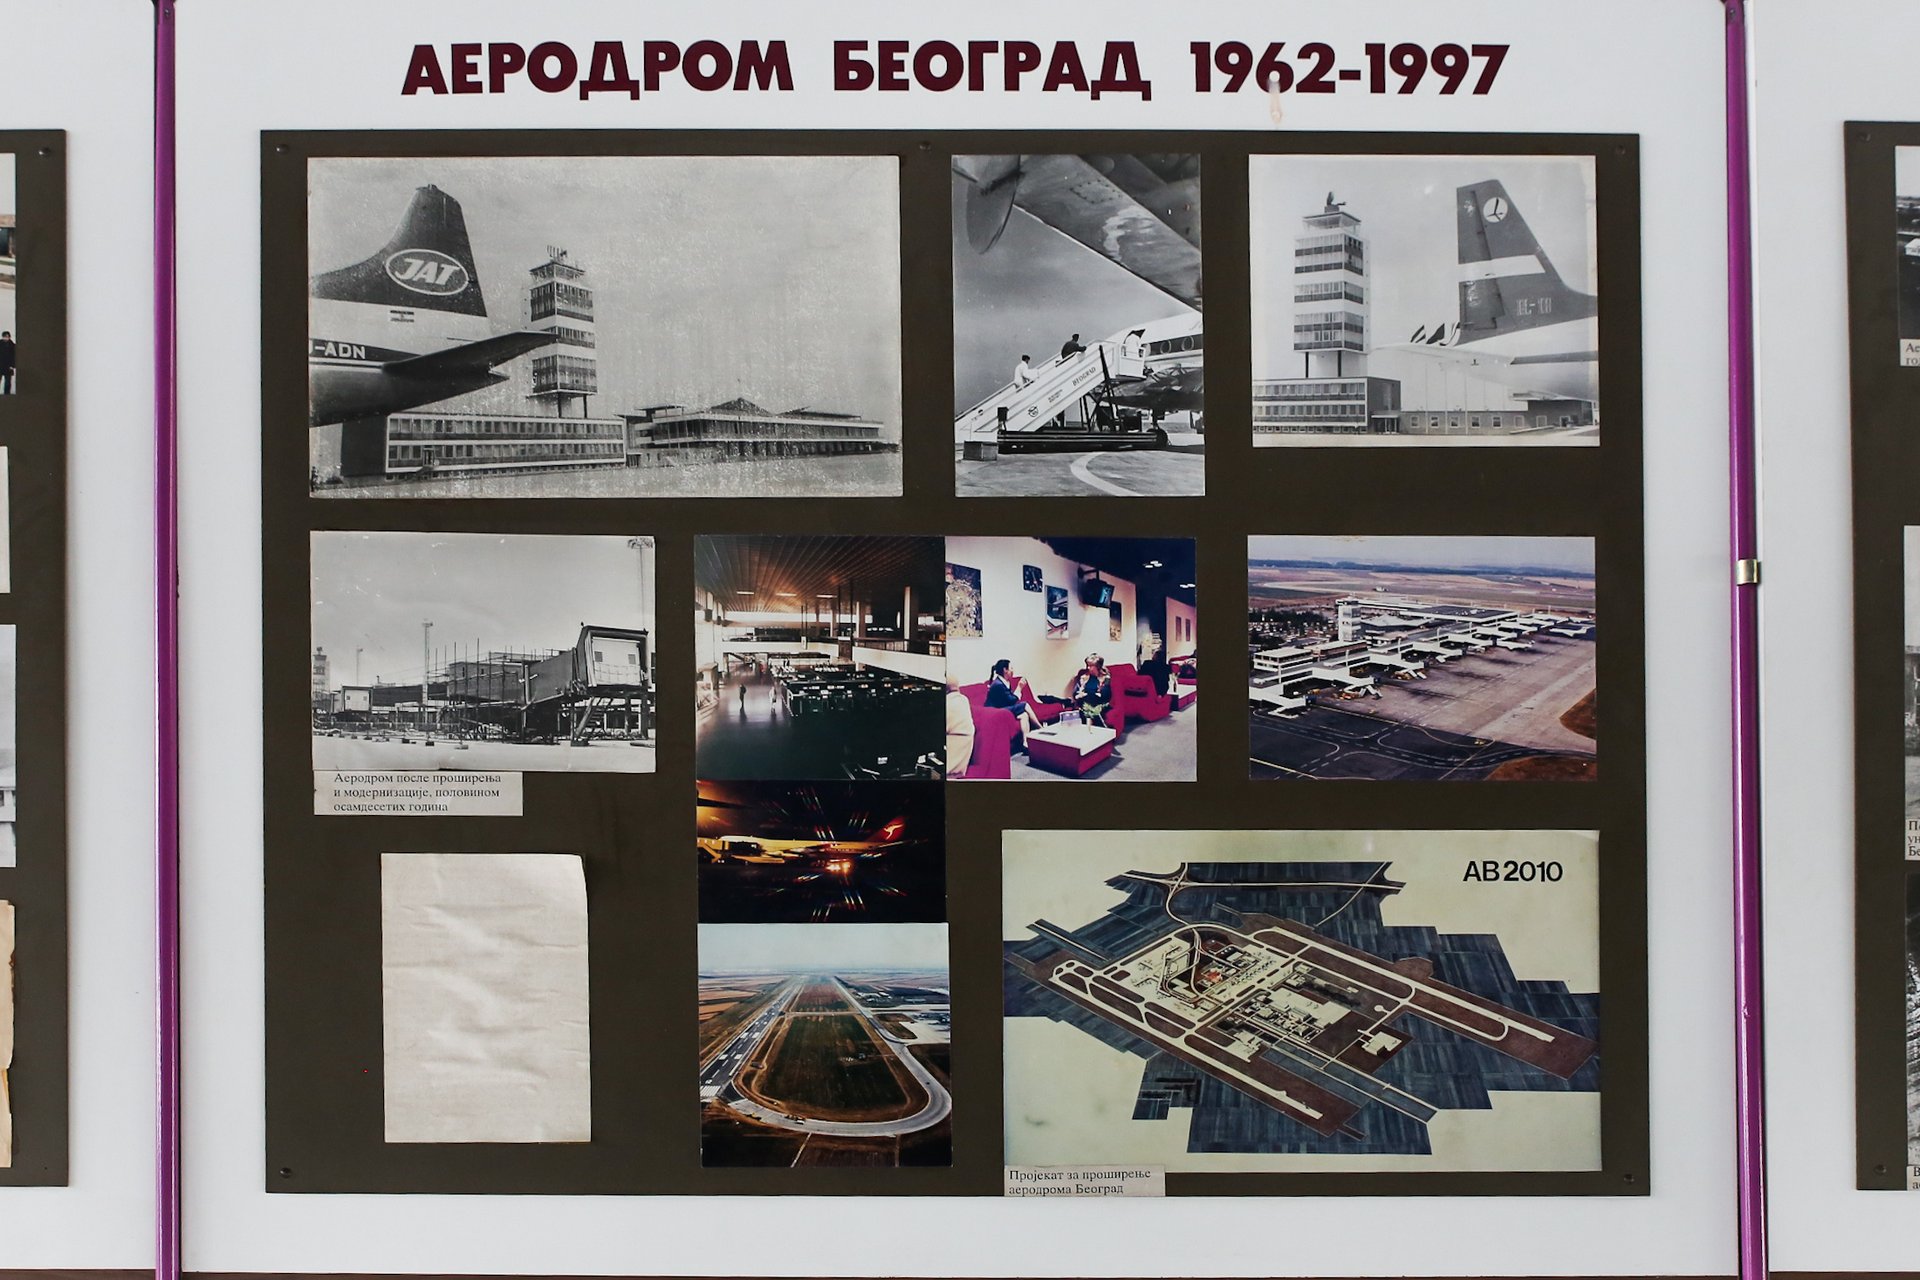 aviation-museum-belgrade-39.jpg